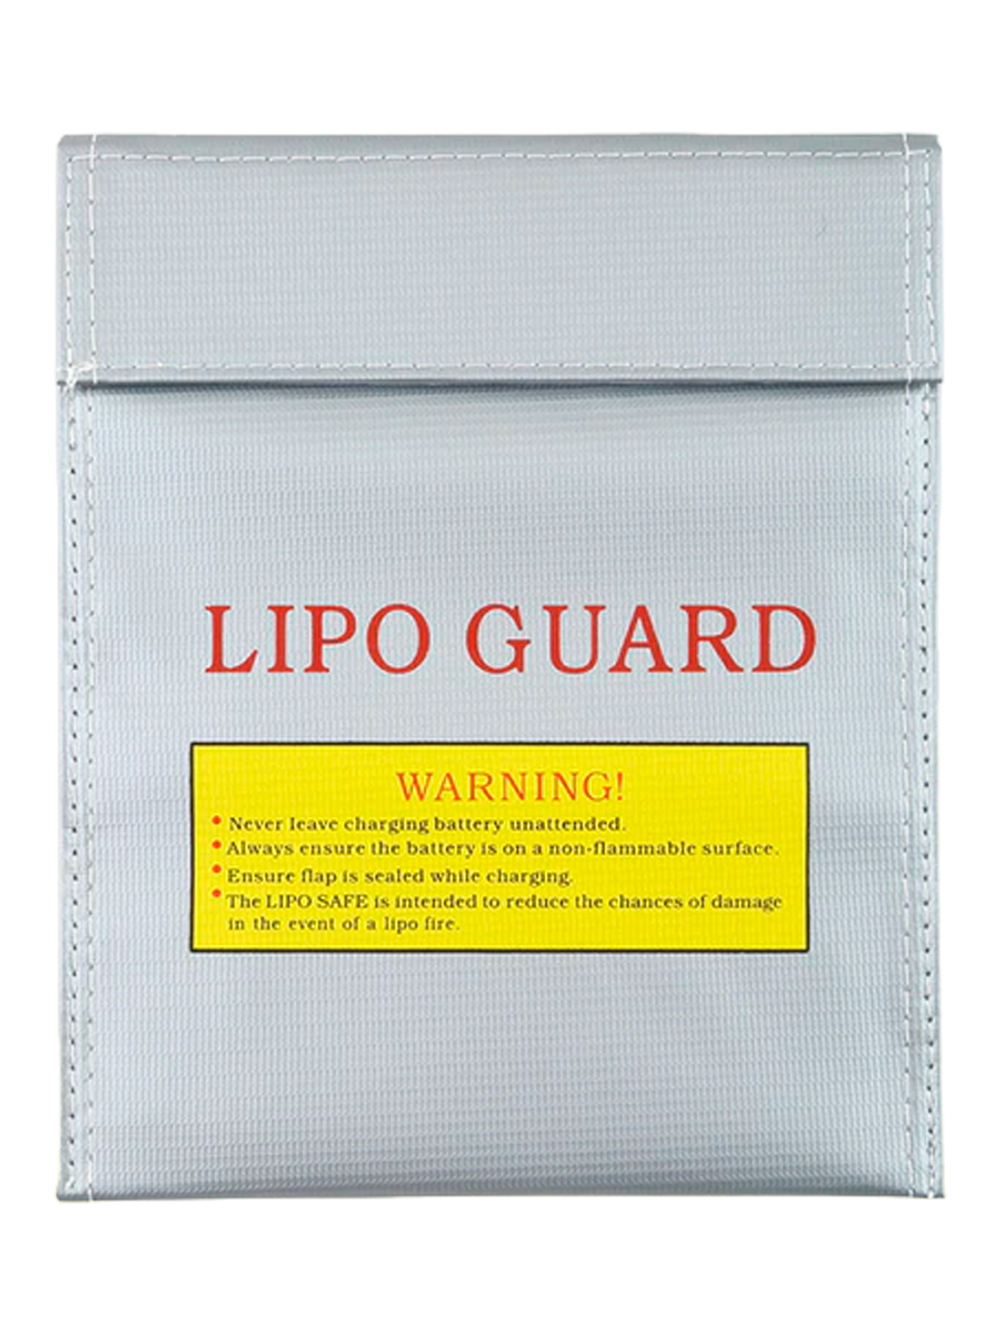 Пакет для хранения Li-Po АКБ термостойкий AGR IP-021 LiPo Guard (23x30 см)